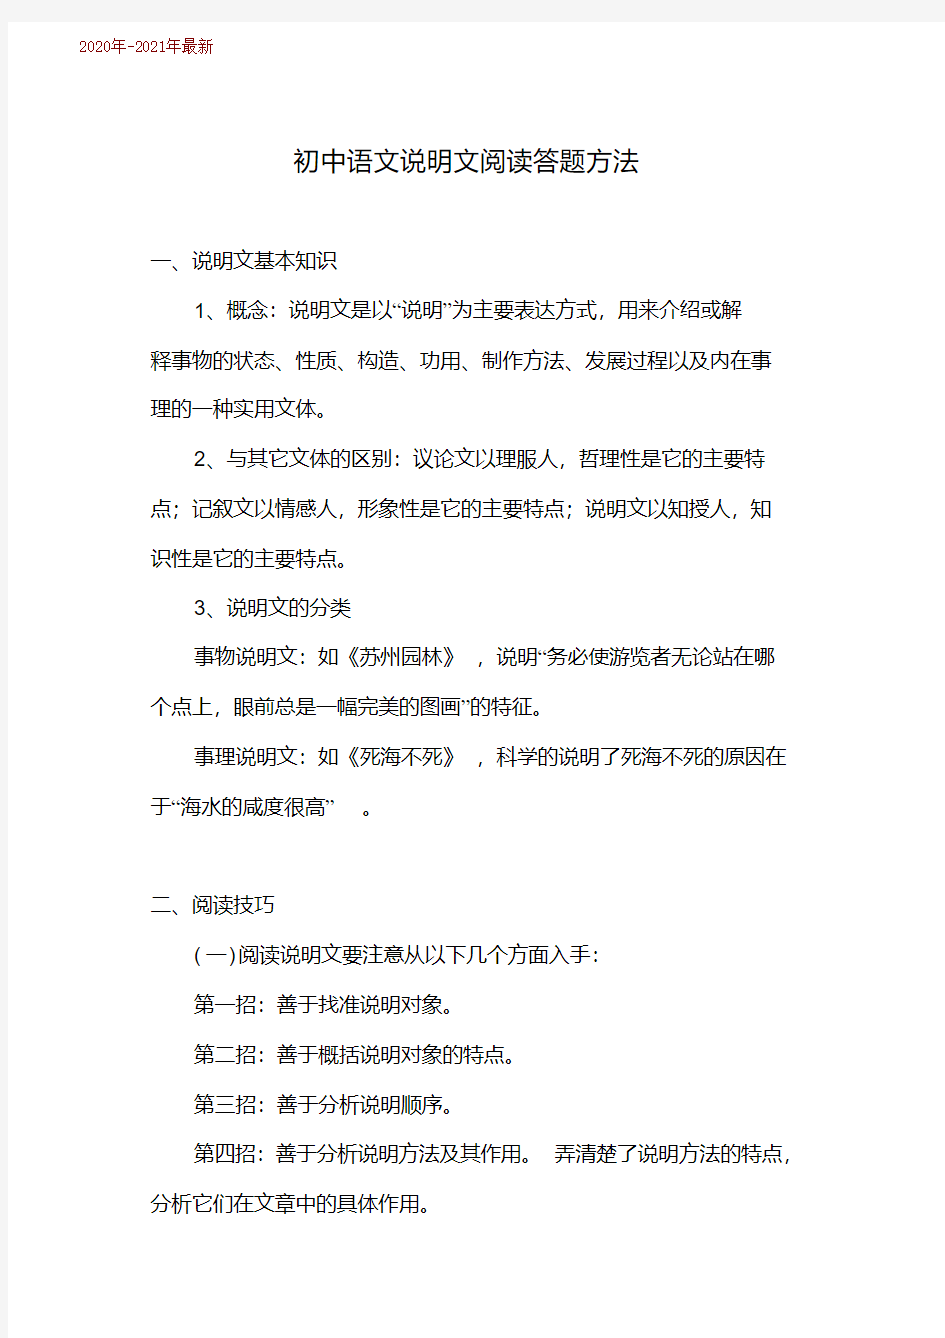 初中语文说明文阅读答题技巧(2020年-2021年)